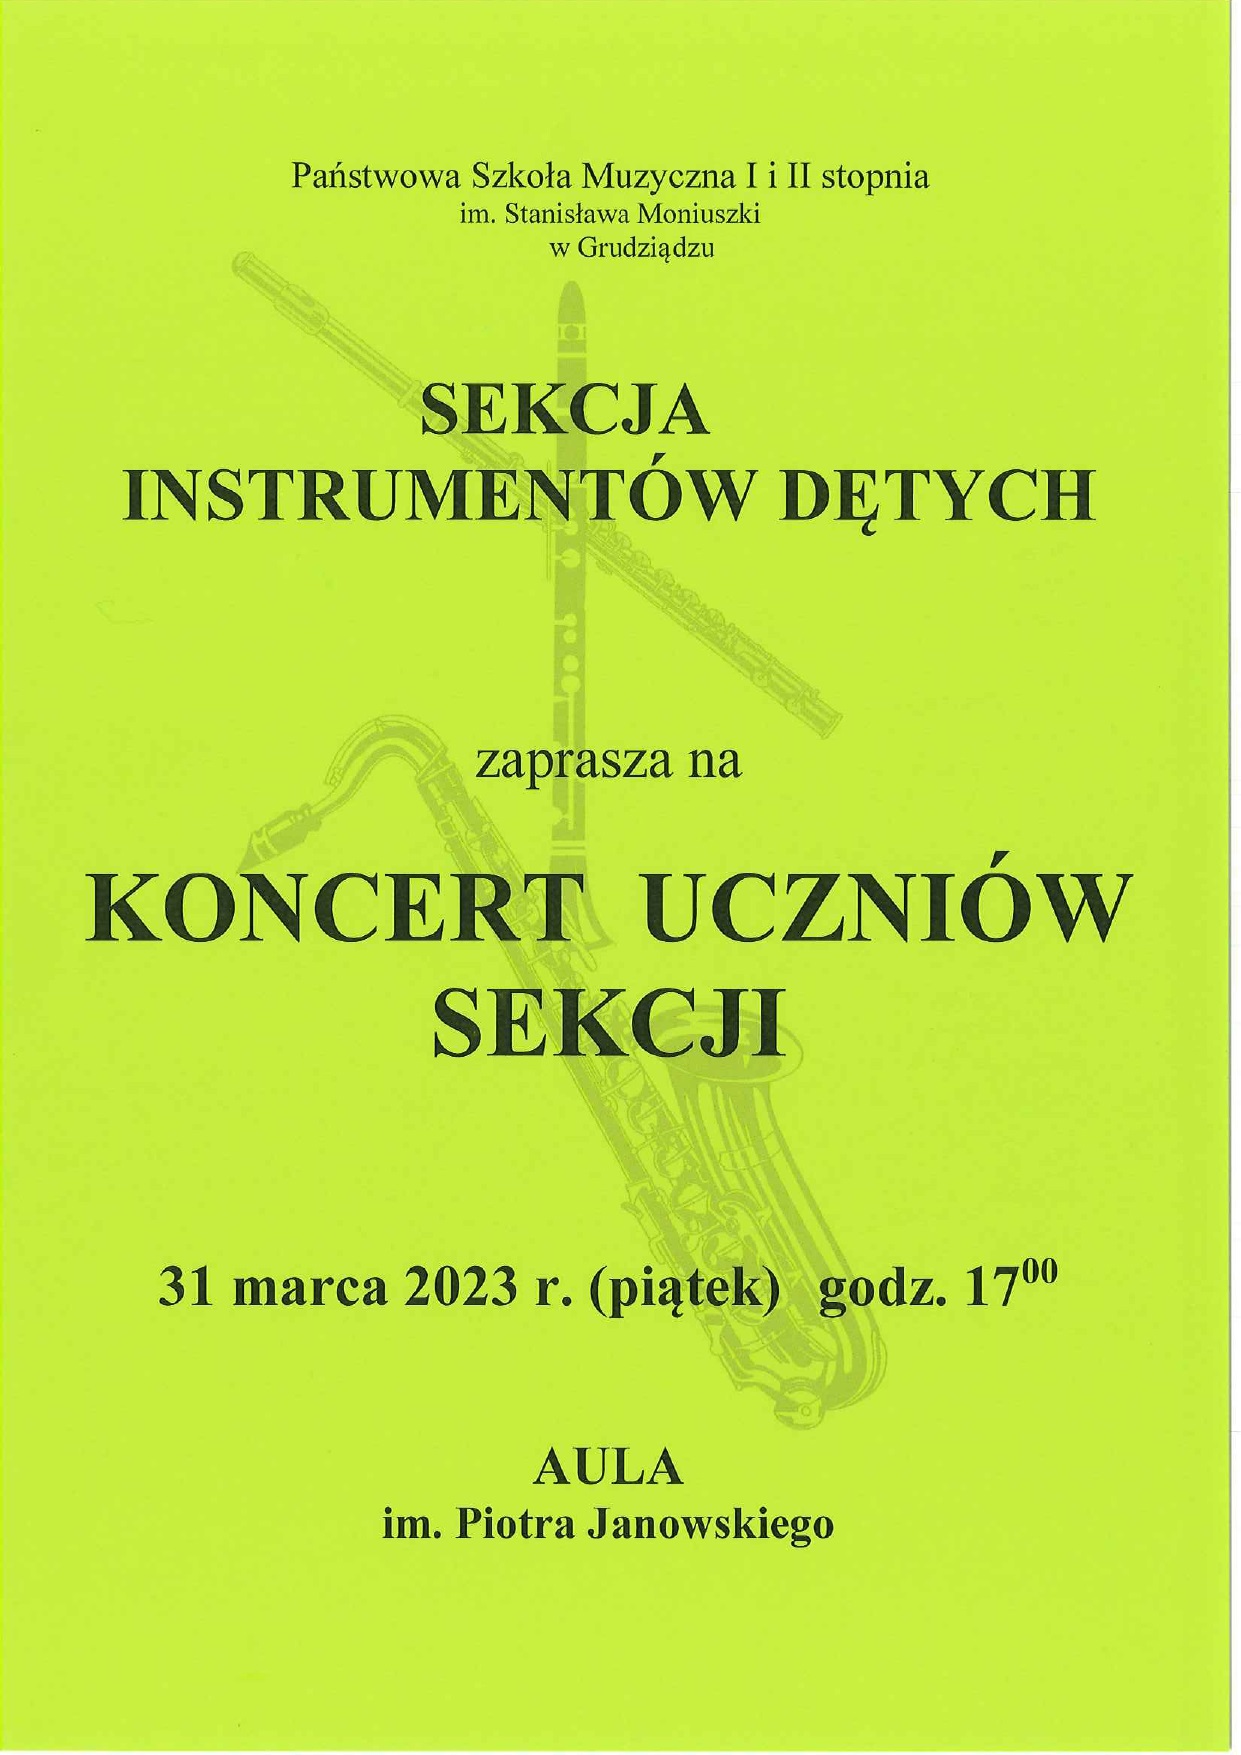 Koncert sekcji instrumentów dętych